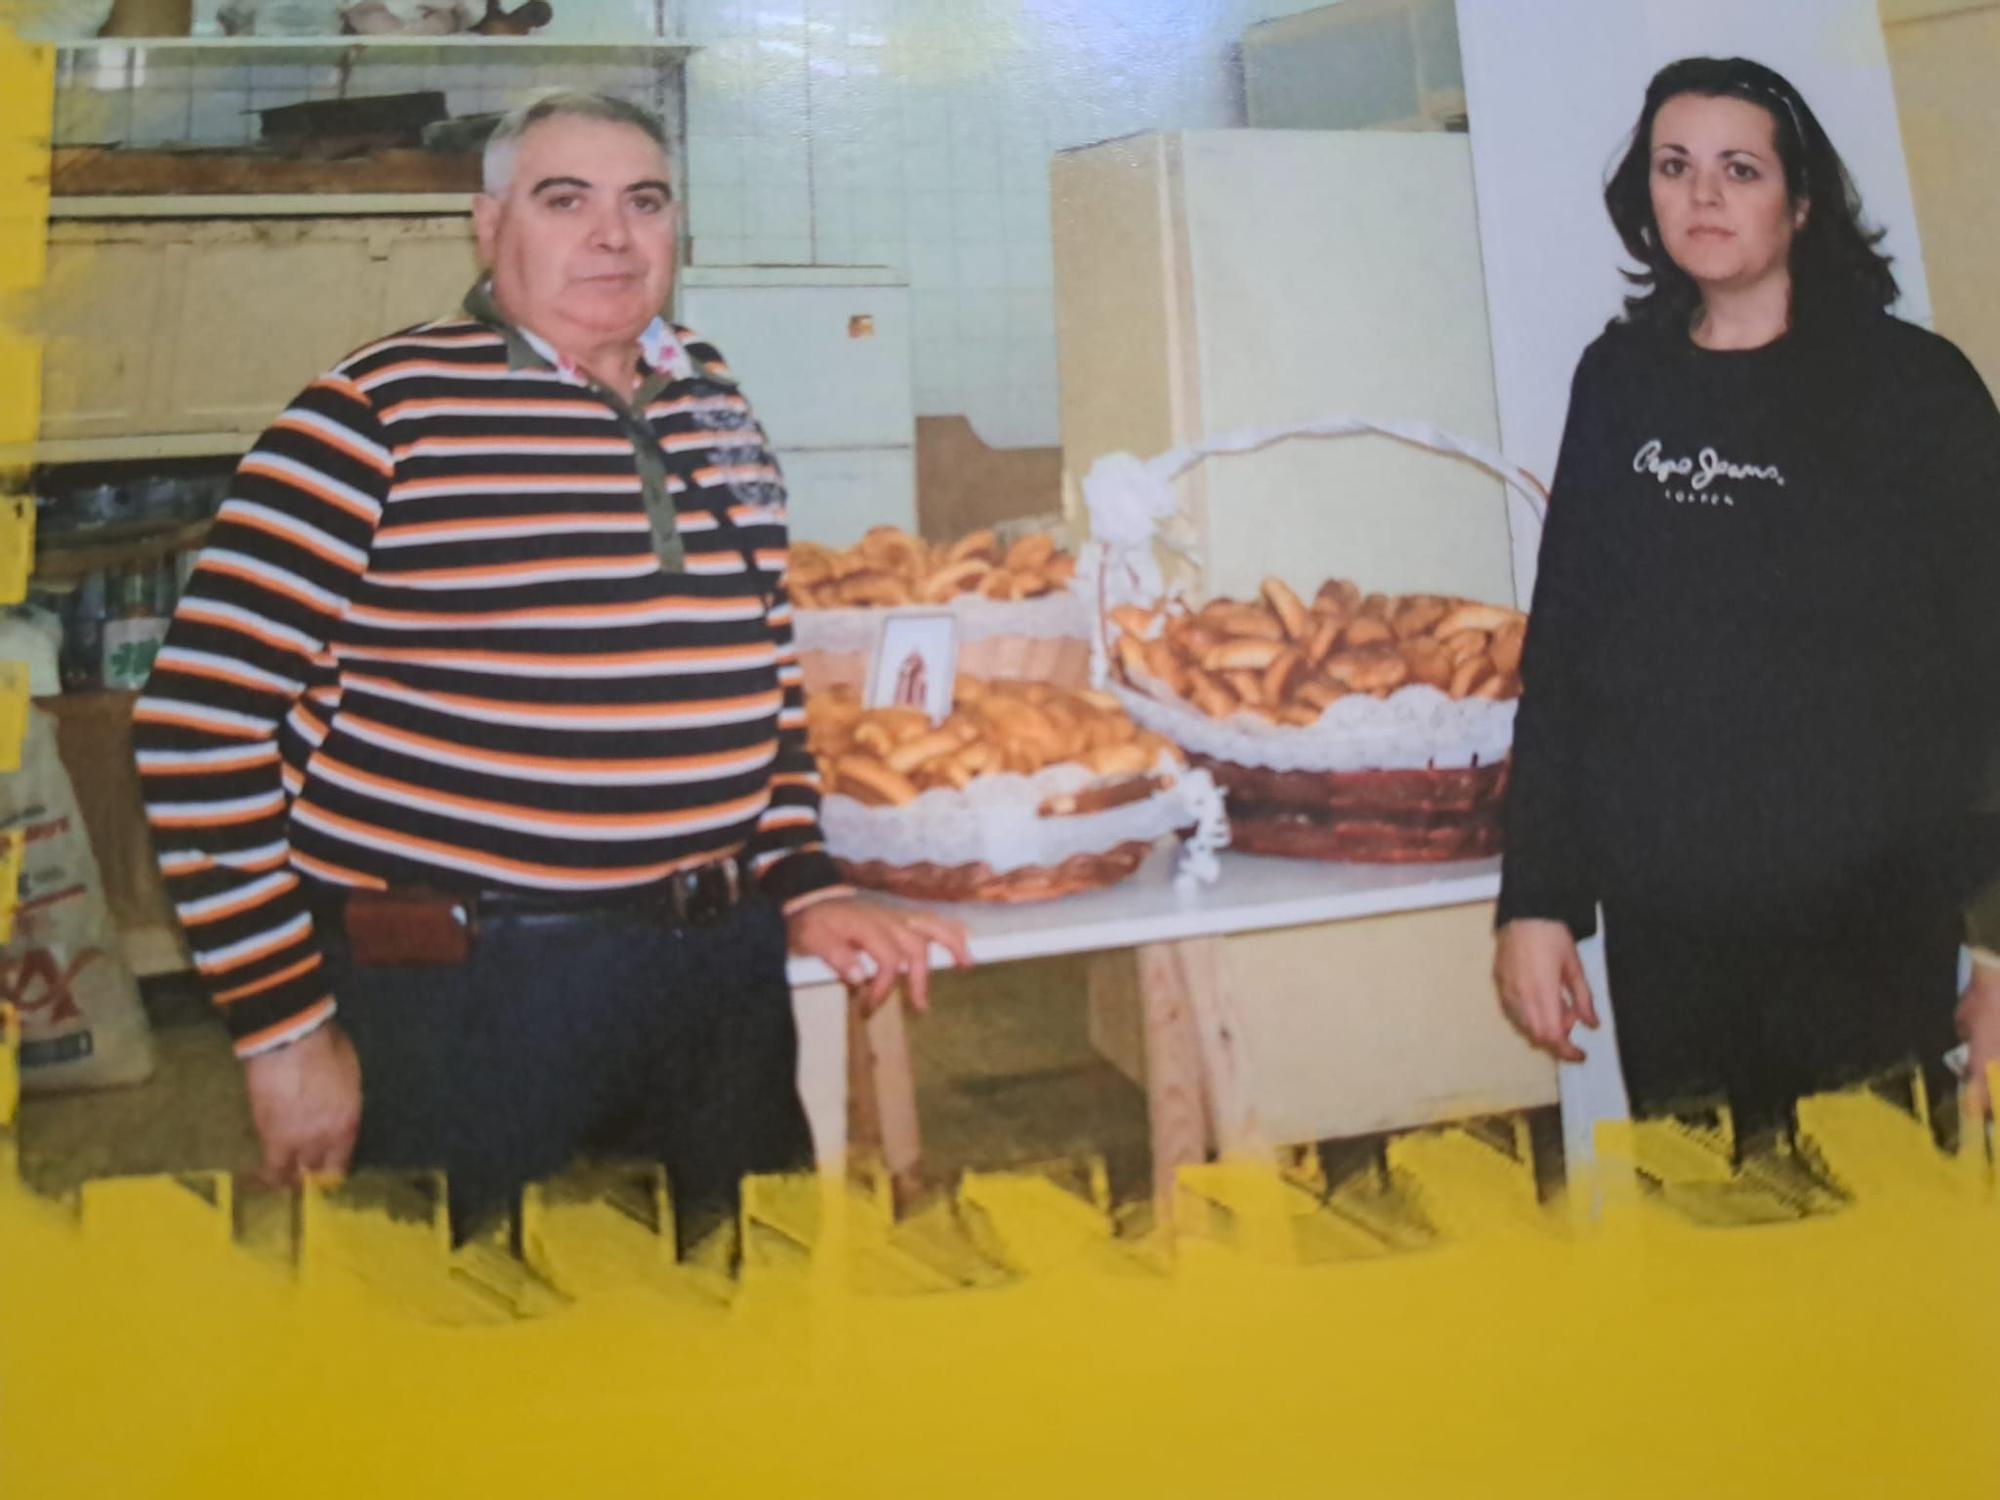 La historia de la panadería Paquita, de Benicàssim, en imágenes